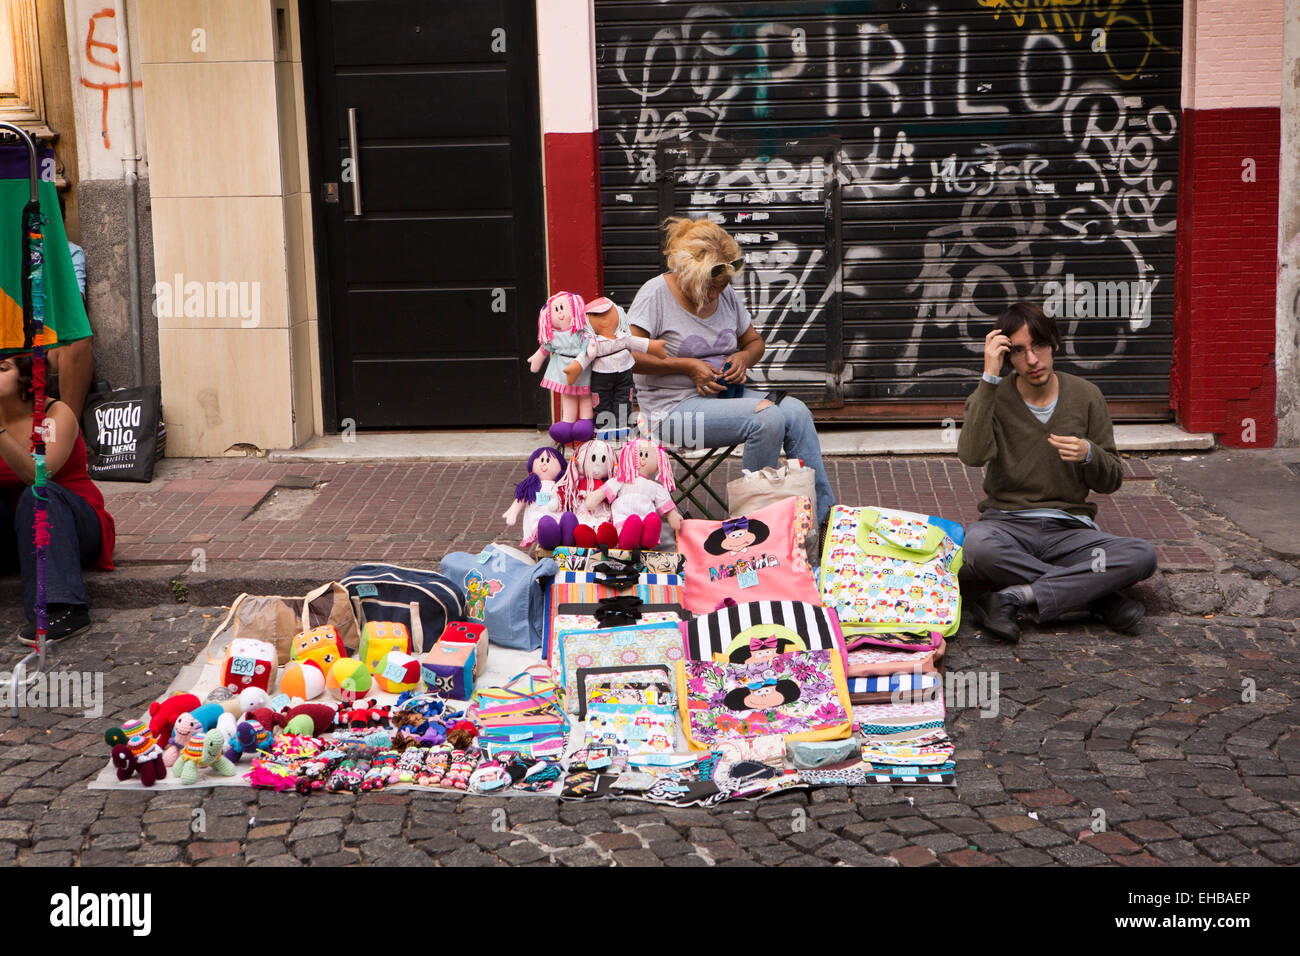 Argentina a Buenos Aires, il mercato di San Telmo, giovani stallholders al giocattolo morbido in stallo Foto Stock